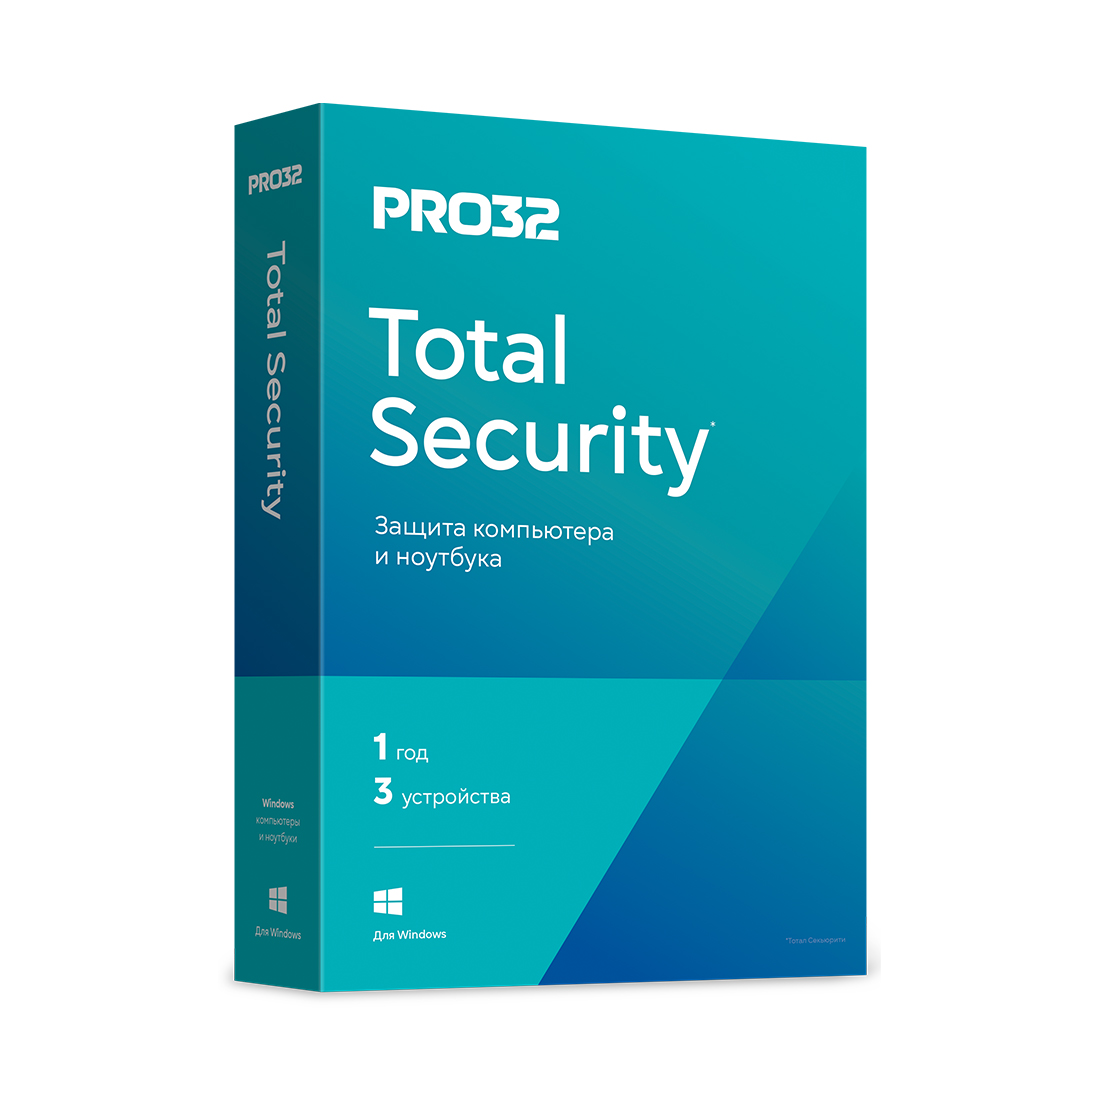 ПО Антивирус PRO32 Total Security BOX на 1 год 3ПК